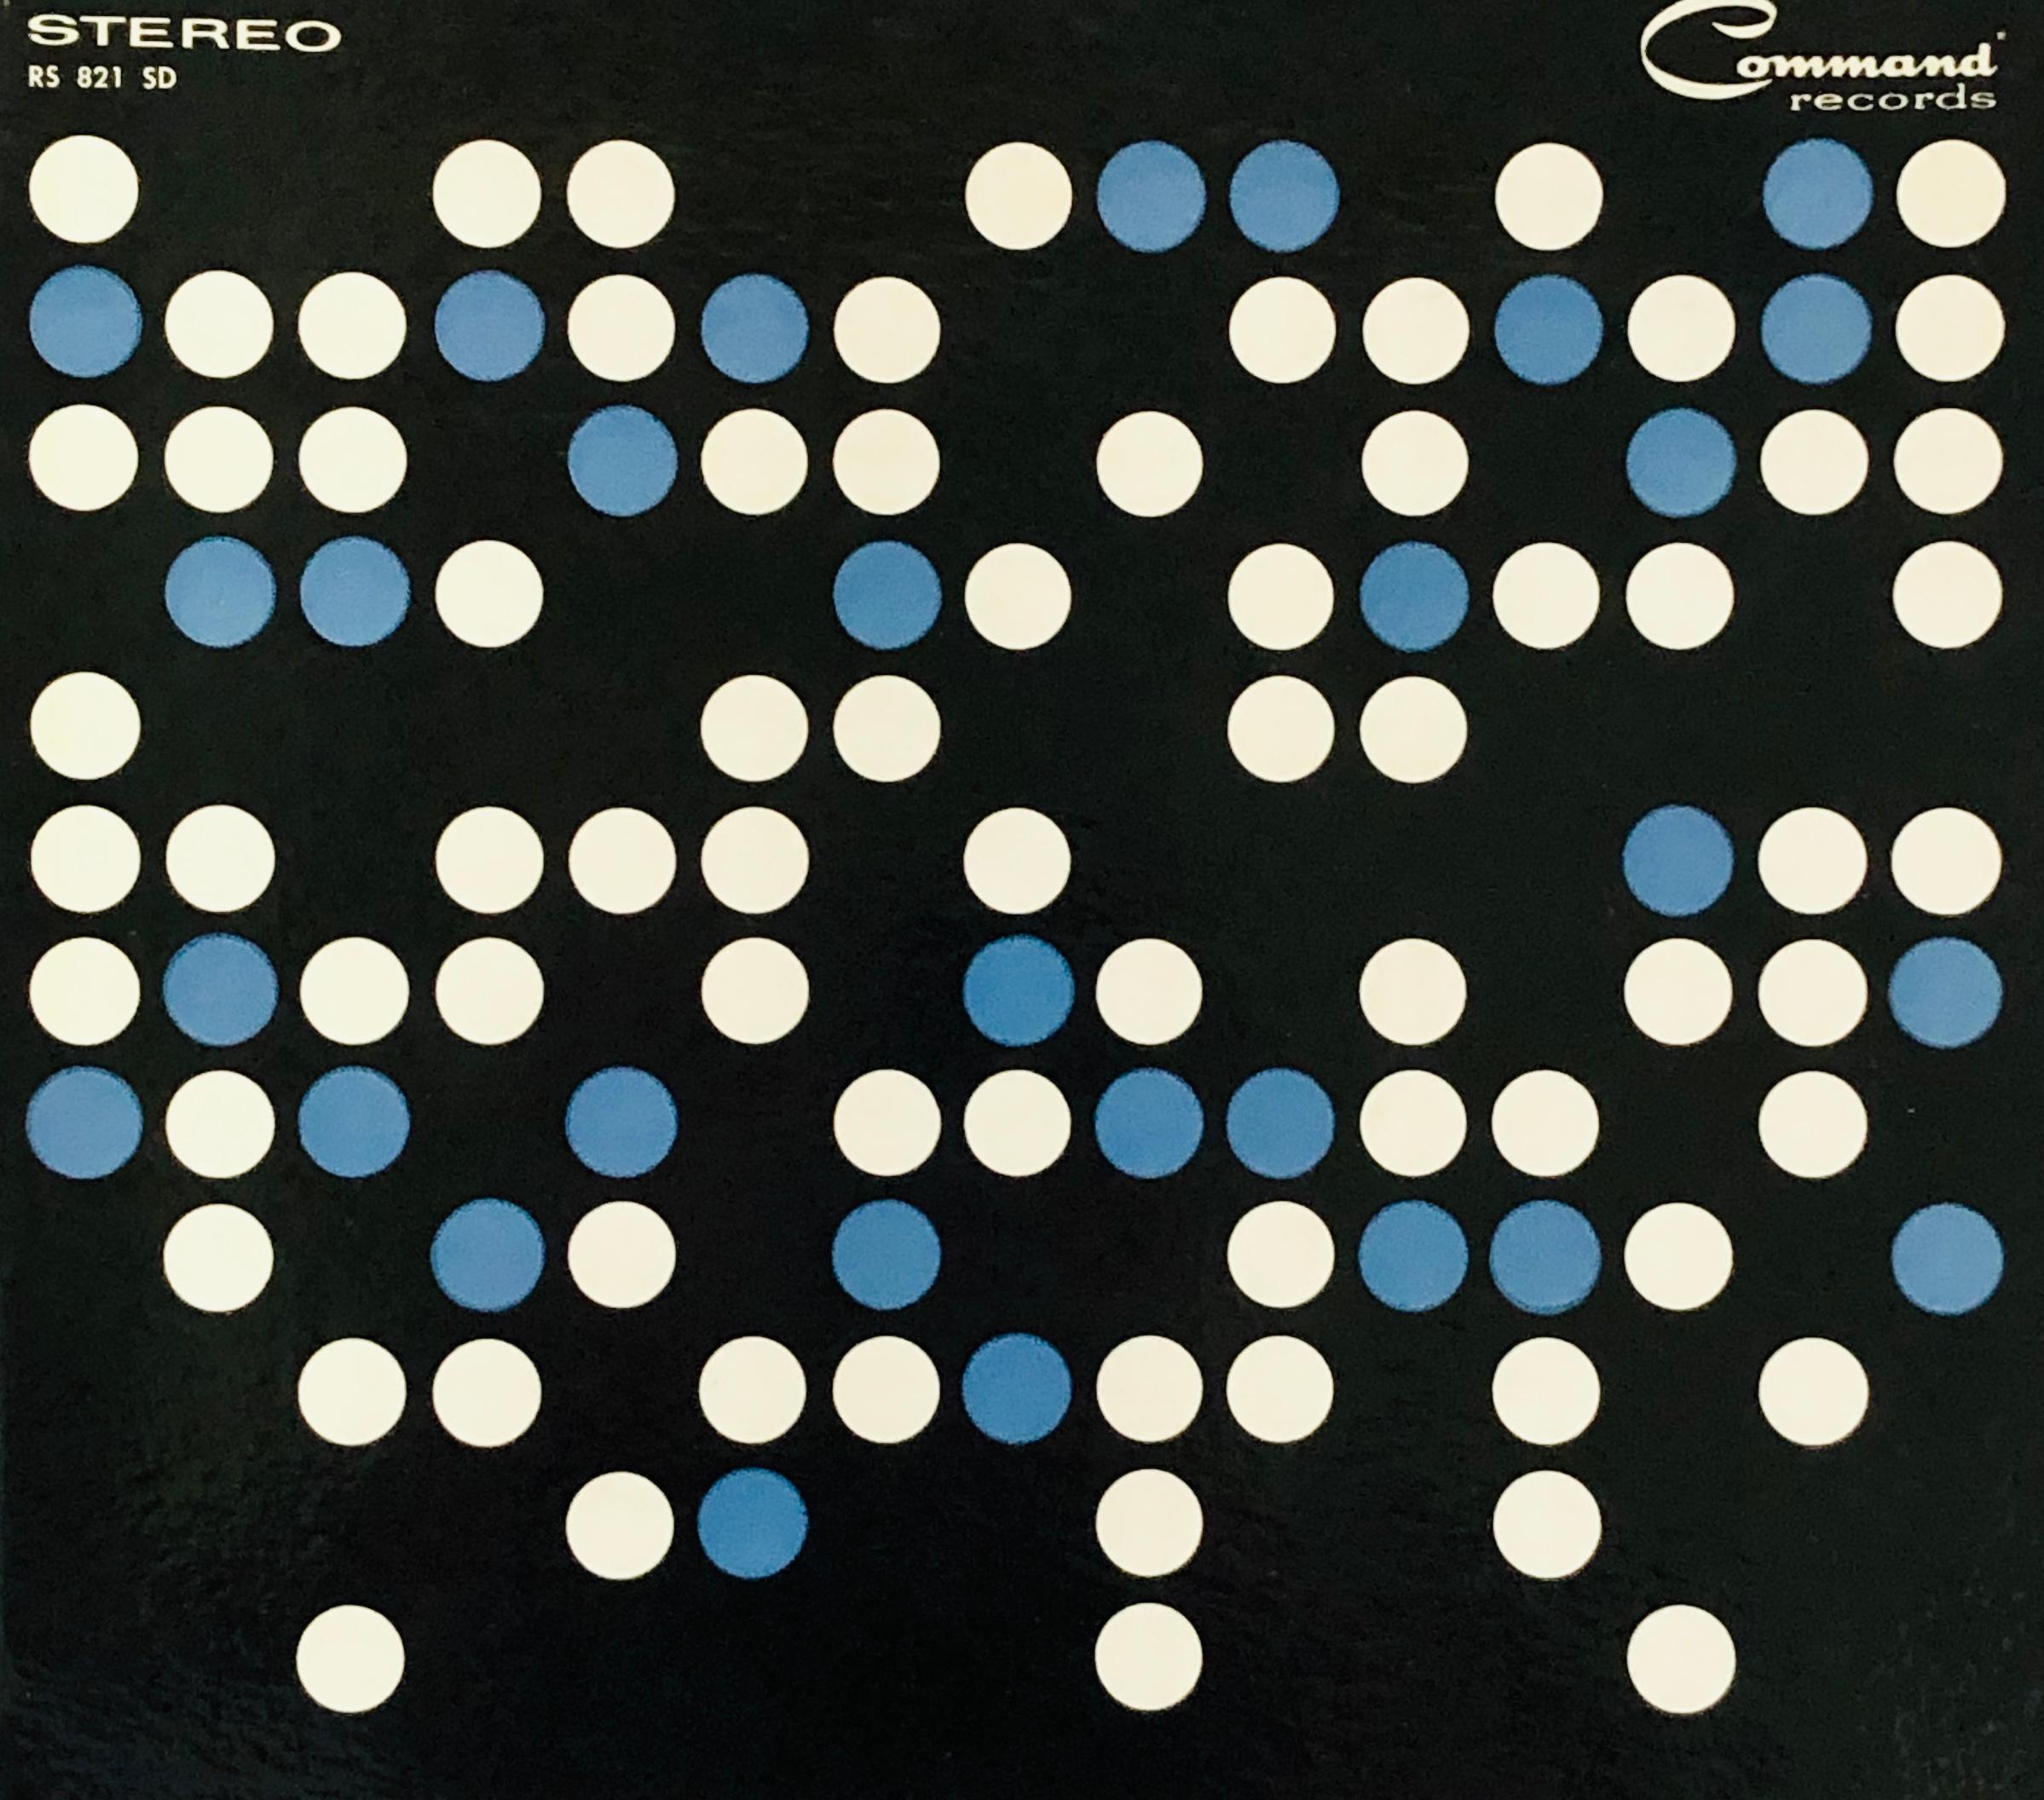 L'art des disques vinyles de Josef Albers (années 1950) 